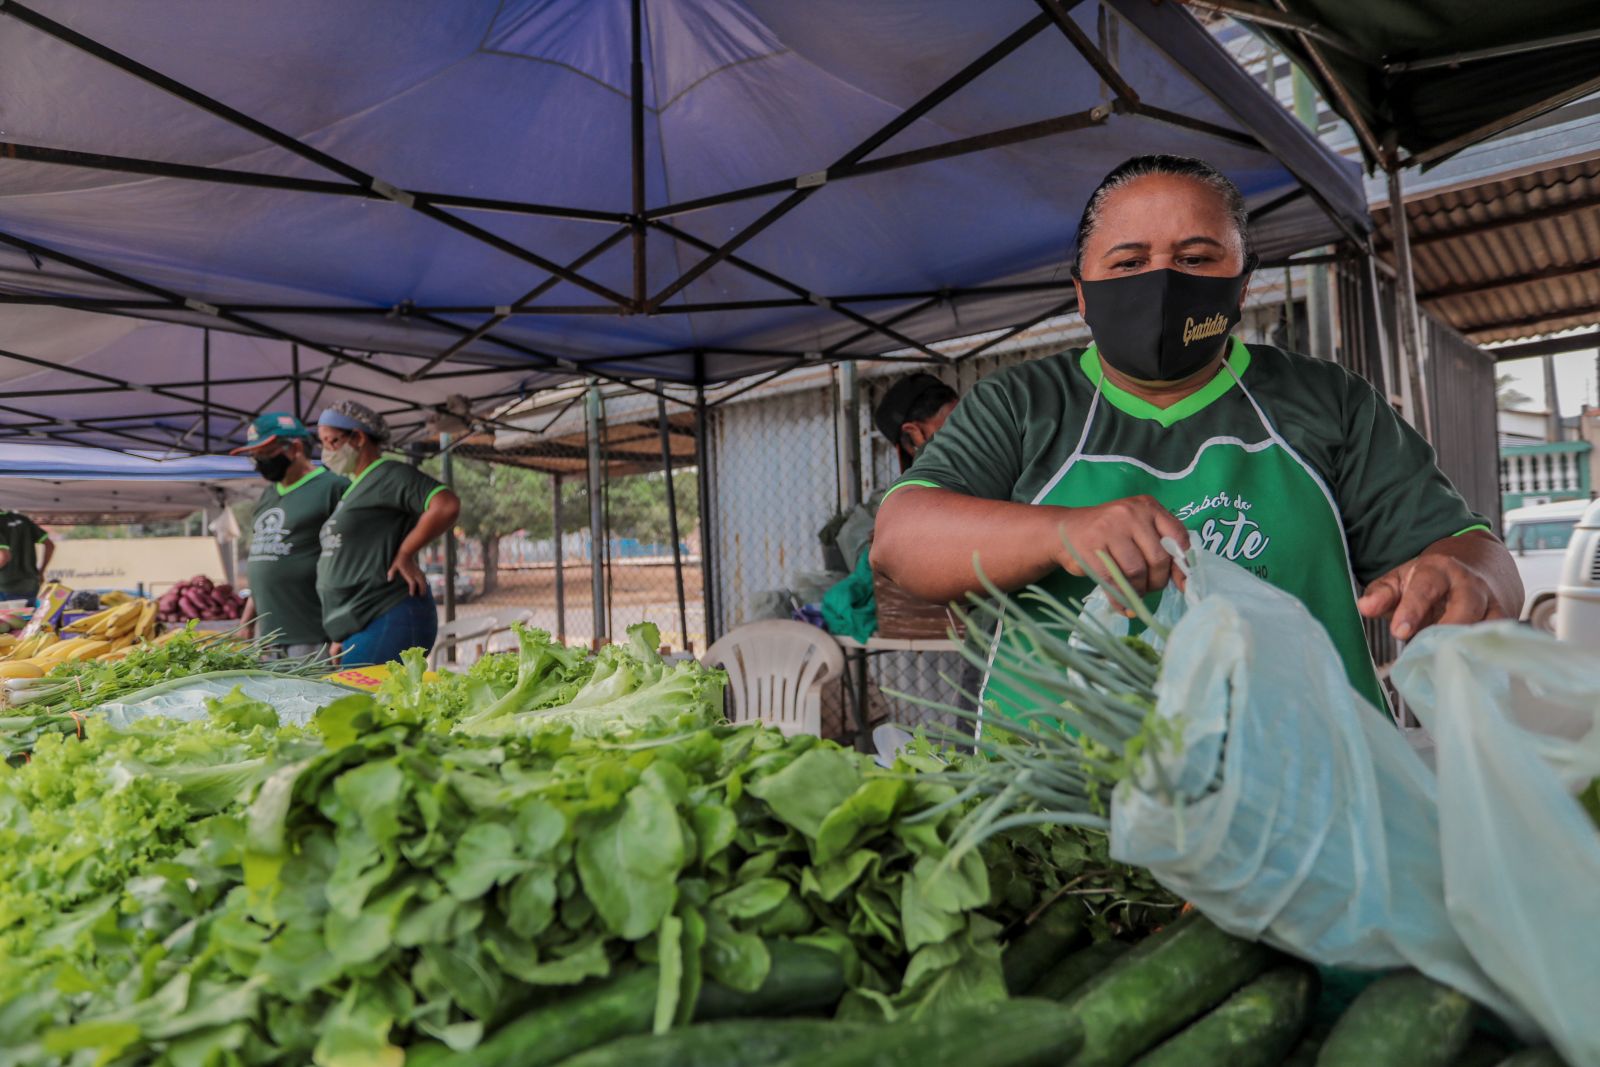 Porto Velho: Produção de hortaliças no setor chacareiro atende mercado local